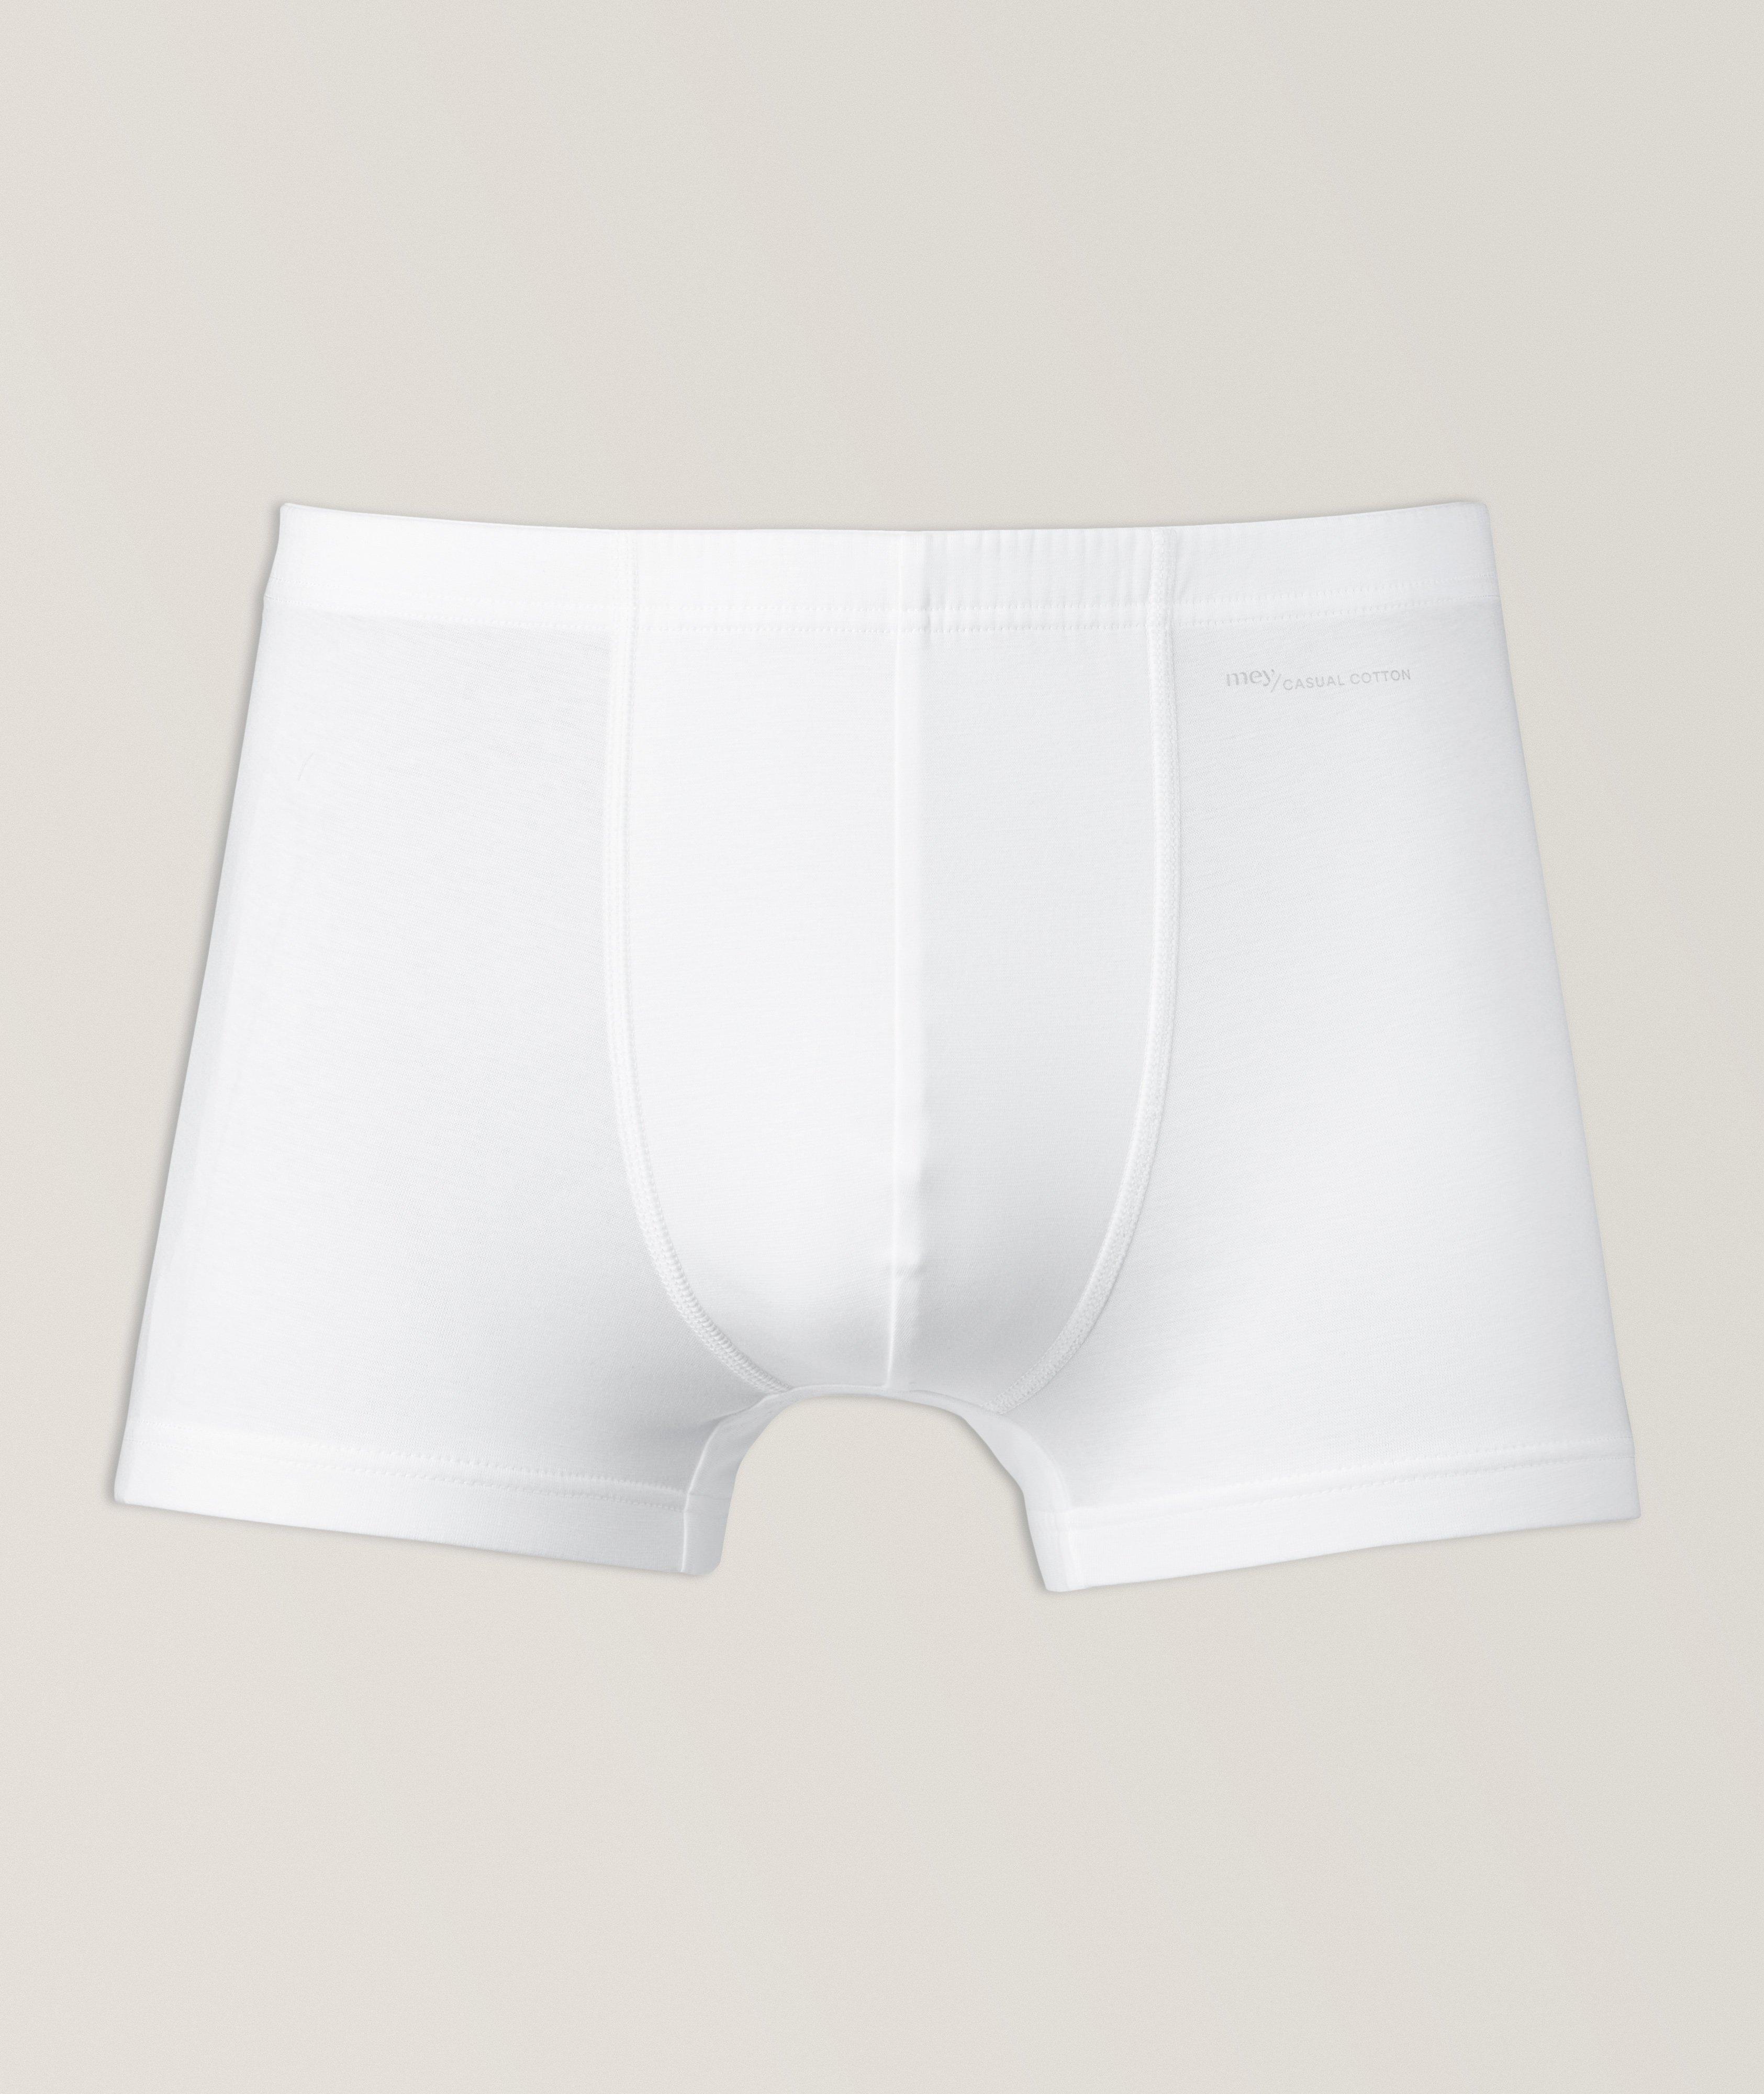 Mens Casual Denim Printed Thongs Panties Swimming Briefs Boxers